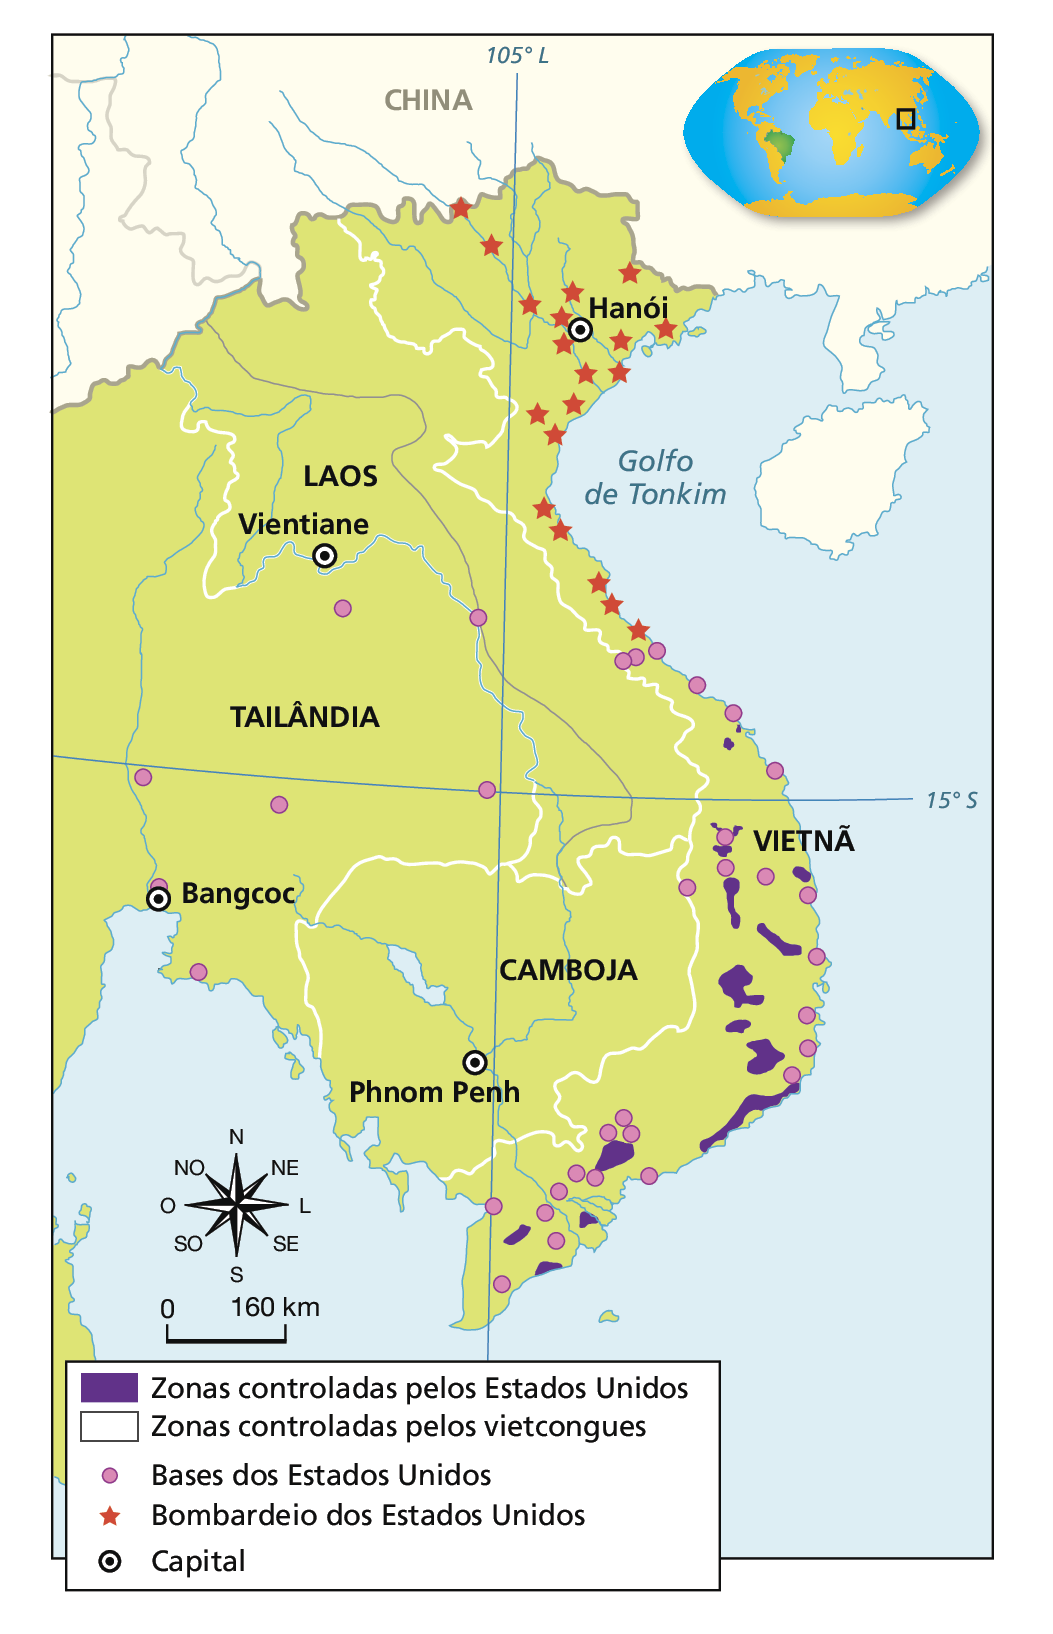 Mapa. Guerra do Vietnã (1967). Destaque para o sudeste asiático, o Golfo de Tonkim e os países a oeste do Vietnã: Laos, Camboja e Tailândia. Em roxo, 'Zonas controladas pelos Estados Unidos', envolvendo pequenas áreas ao sul e ao centro do Vietnã. Em listras diagonais verdes, 'Zonas controladas pelos vietcongues', no Laos, compreendendo todo território fronteiriço com o Vietnã. Círculos rosas indicam 'Base dos Estados Unidos', distribuídos pelo centro, sudeste e sul do Vietnã e algumas áreas da Tailândia. Estrelas vermelhas indicam 'Bombardeio dos Estados Unidos', presentes sobretudo ao norte do território do Vietnã. No canto inferior esquerdo, rosa dos ventos e escala de 0 a 160 quilômetros.